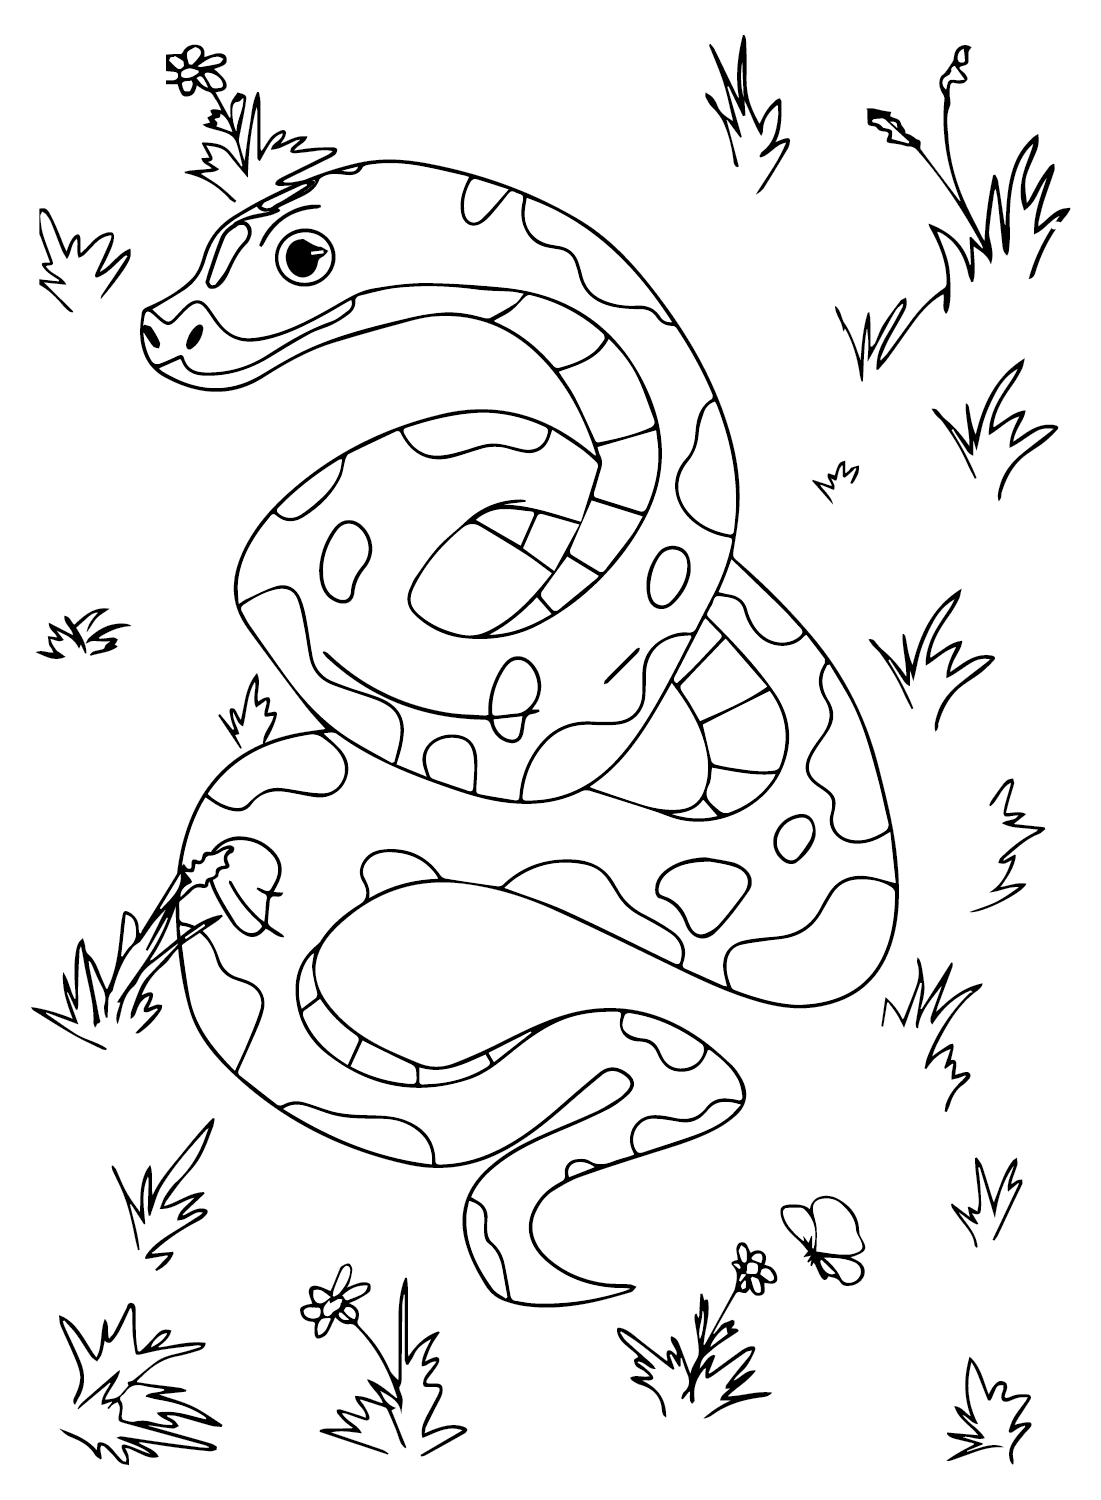 Anaconda Coloring Sheet for Kids from Anaconda